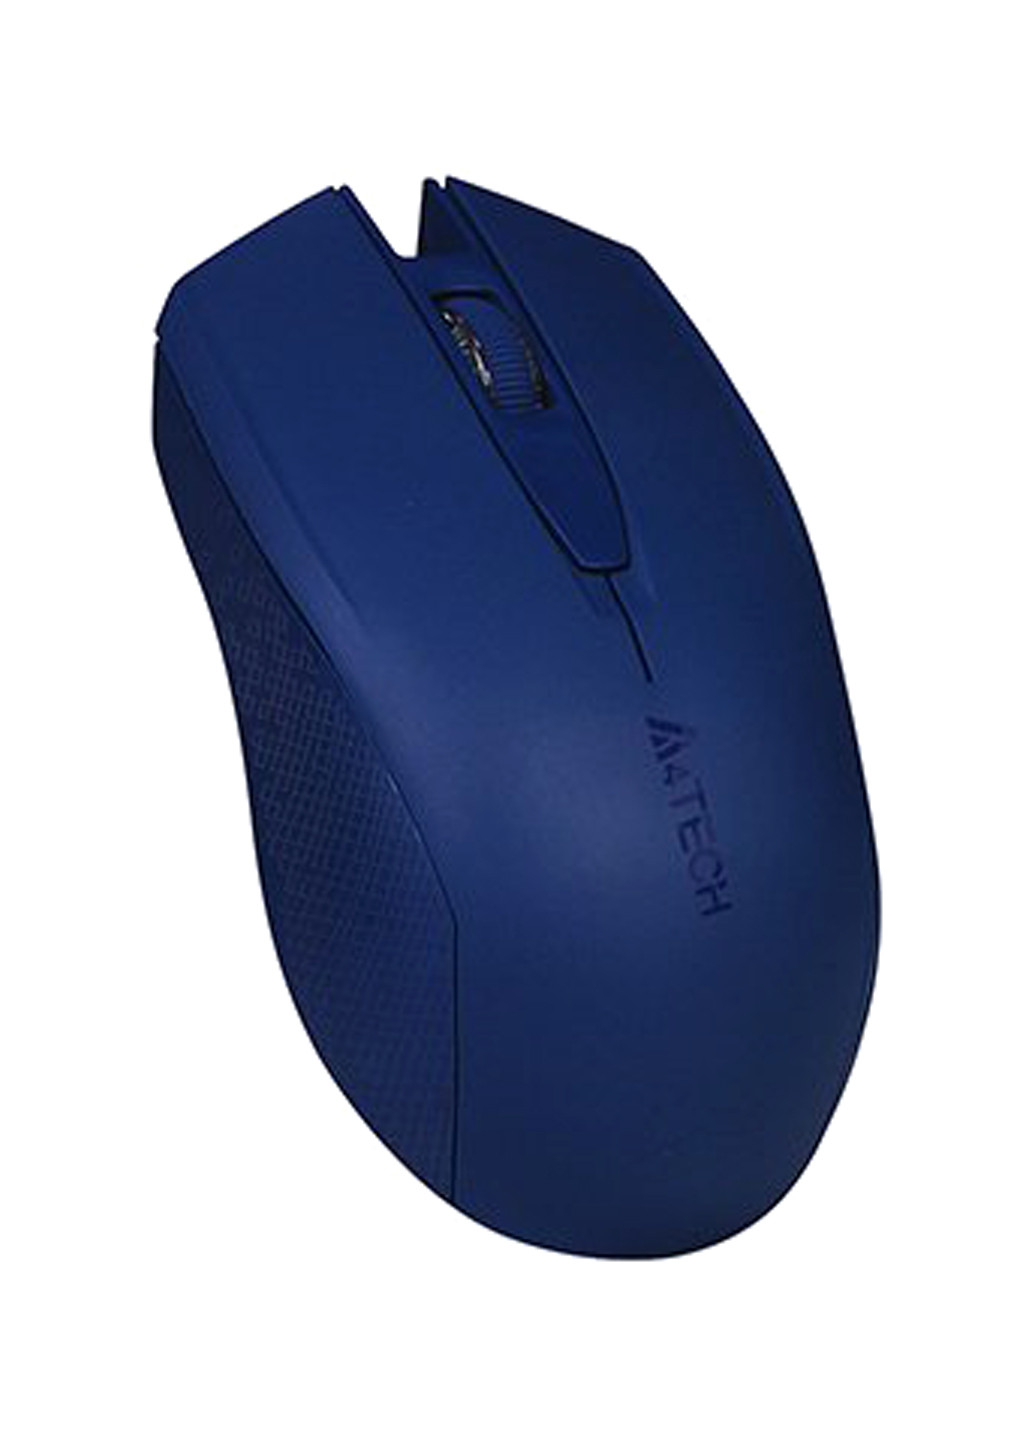 Мышь беспроводная A4Tech g3-760n (blue) (130666152)